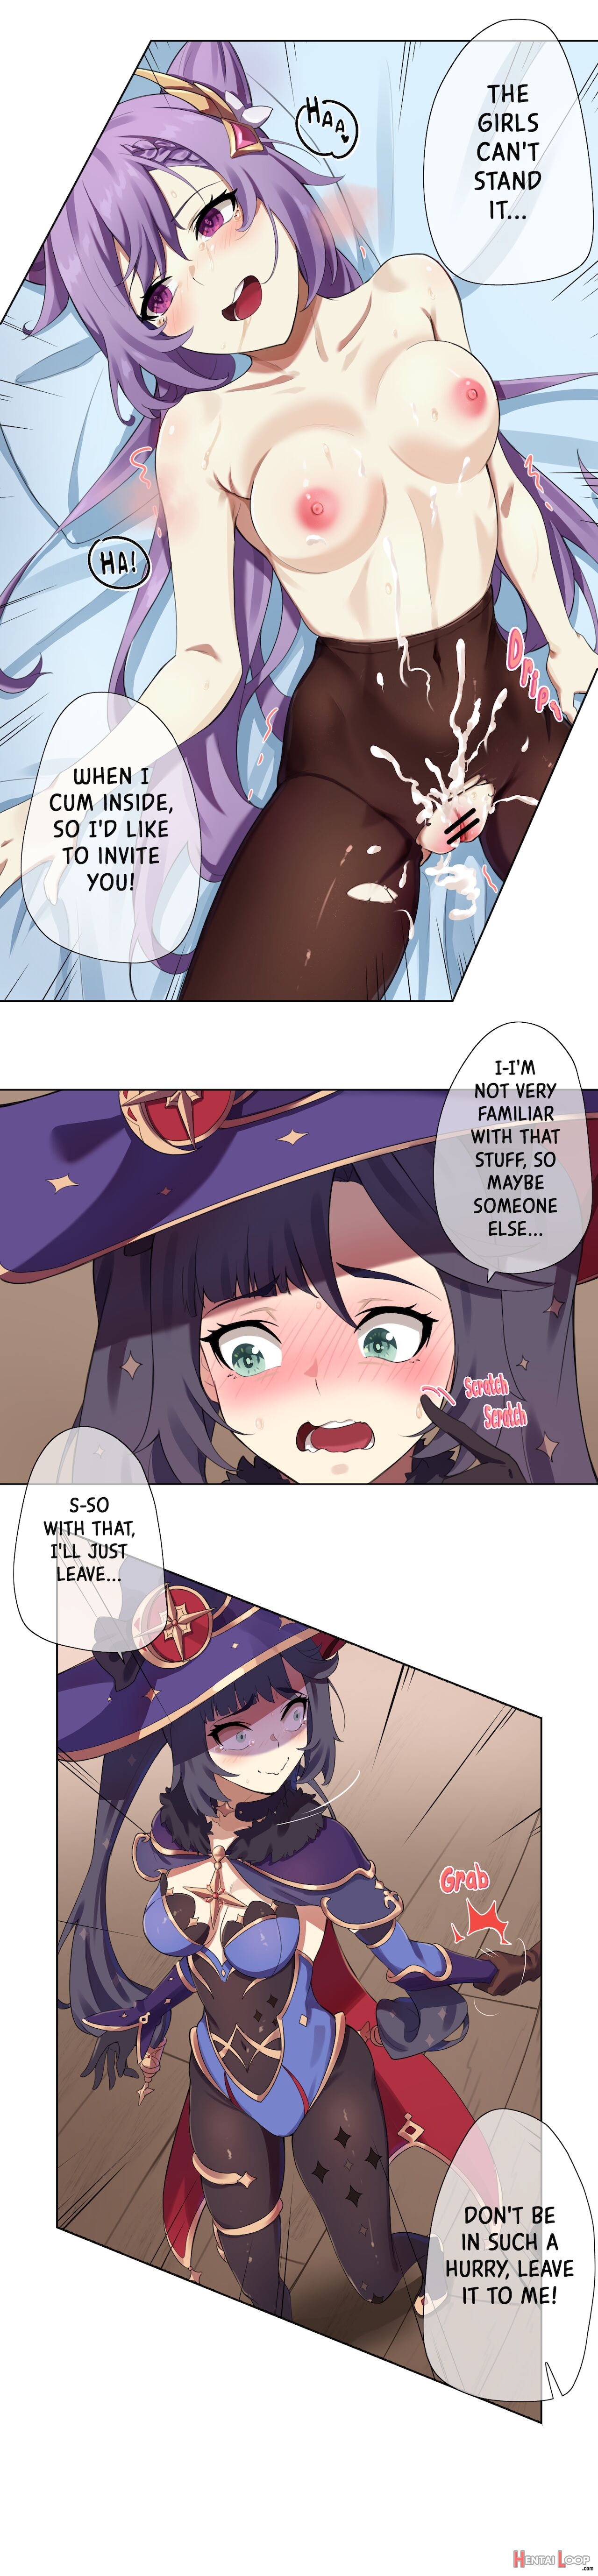 Mona Manga page 2